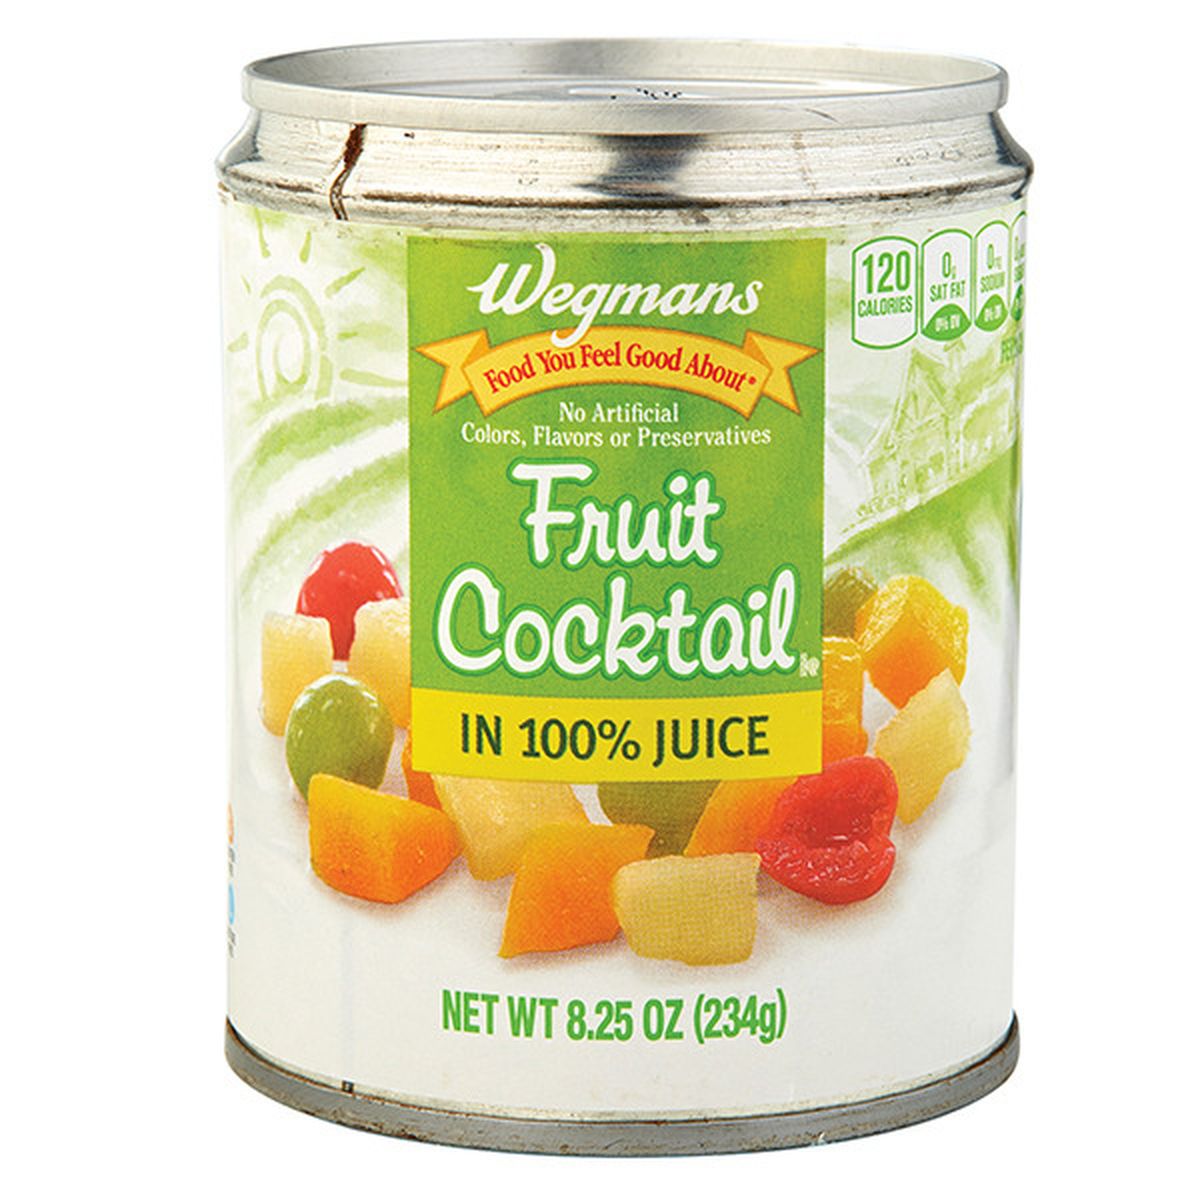 Calories in Wegmans Fruit Cocktail in 100% Juice